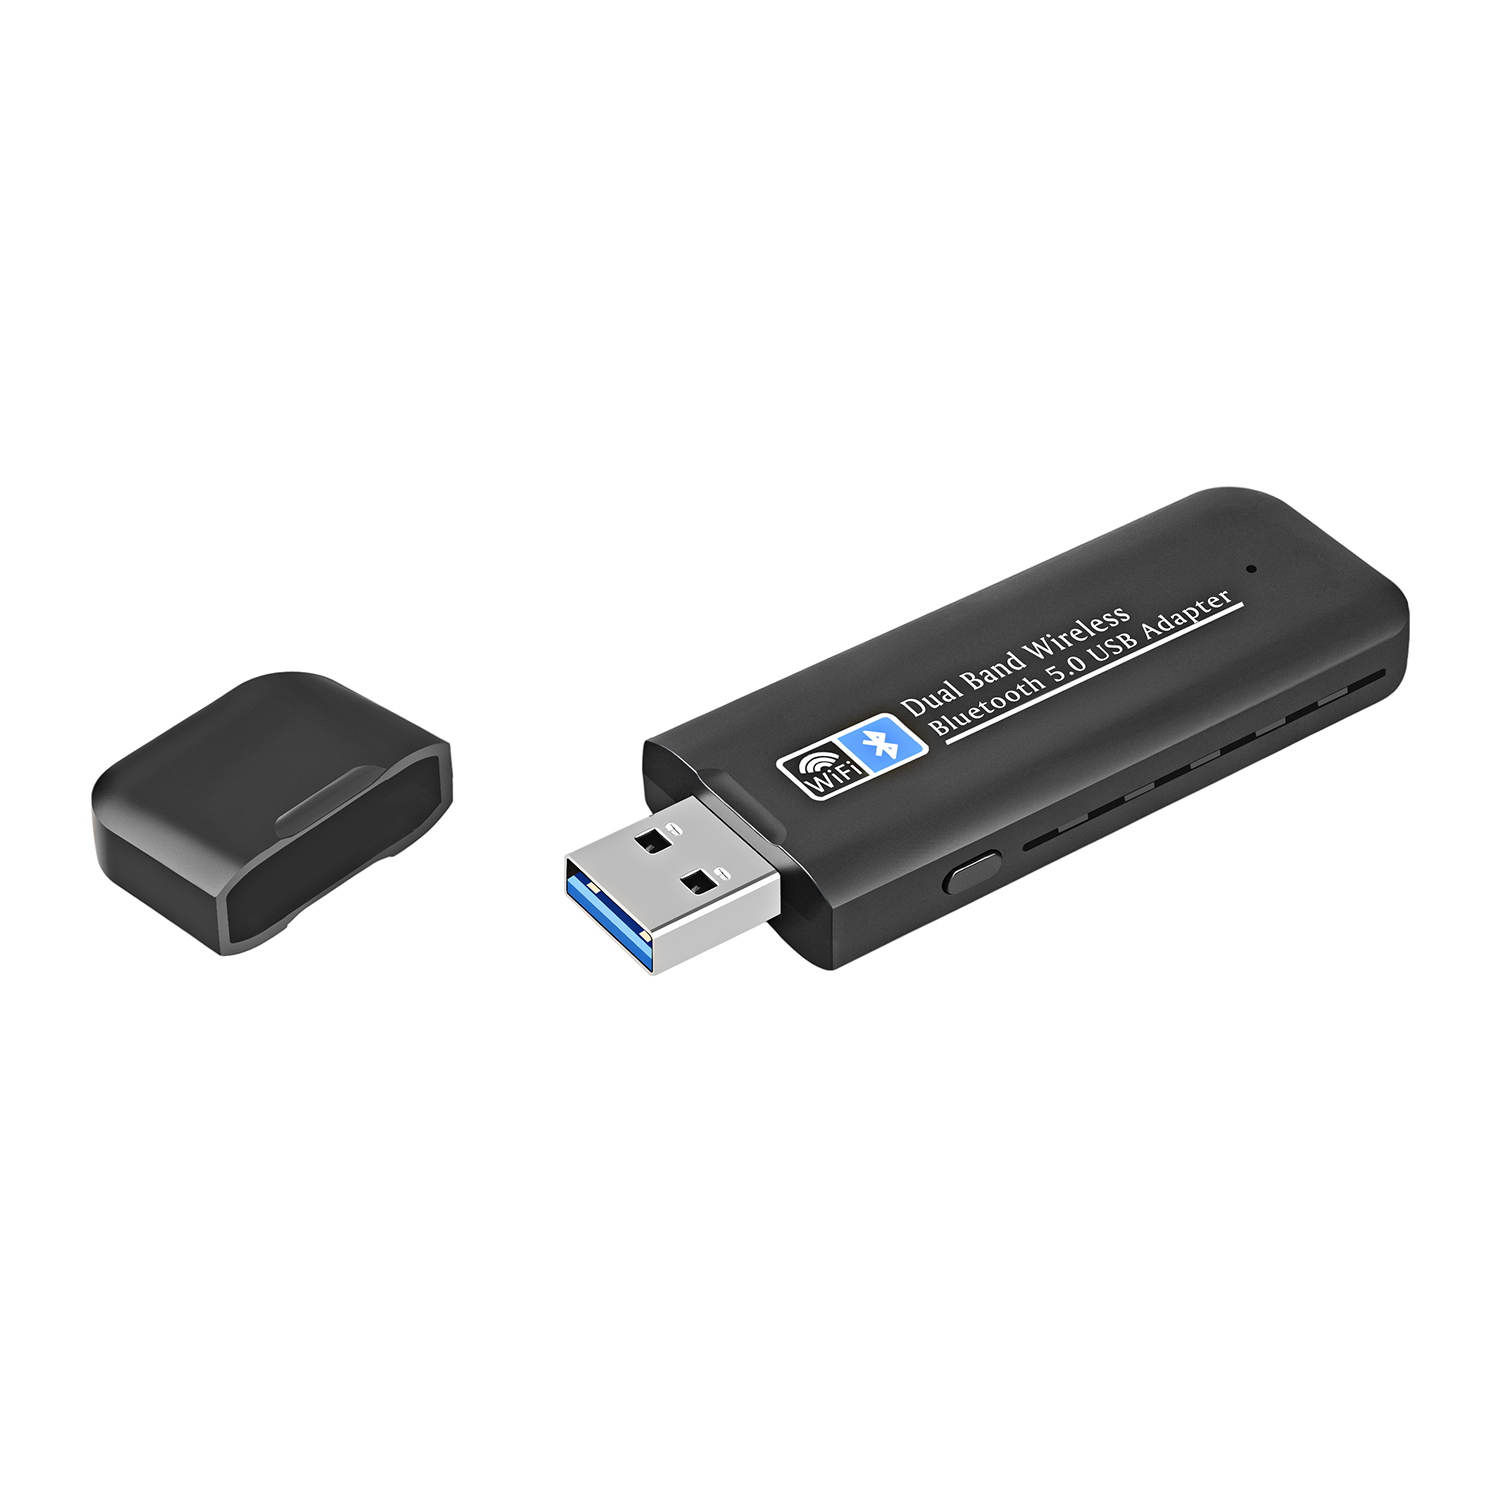 HIGI WB803 USB WiFi Adapter 1300Mbps USB 3.0 WiFi 802.11 ac vezeték nélküli kétsávos hálózati adapter 2.4GHz/5GHz + Bluetooth 5.0